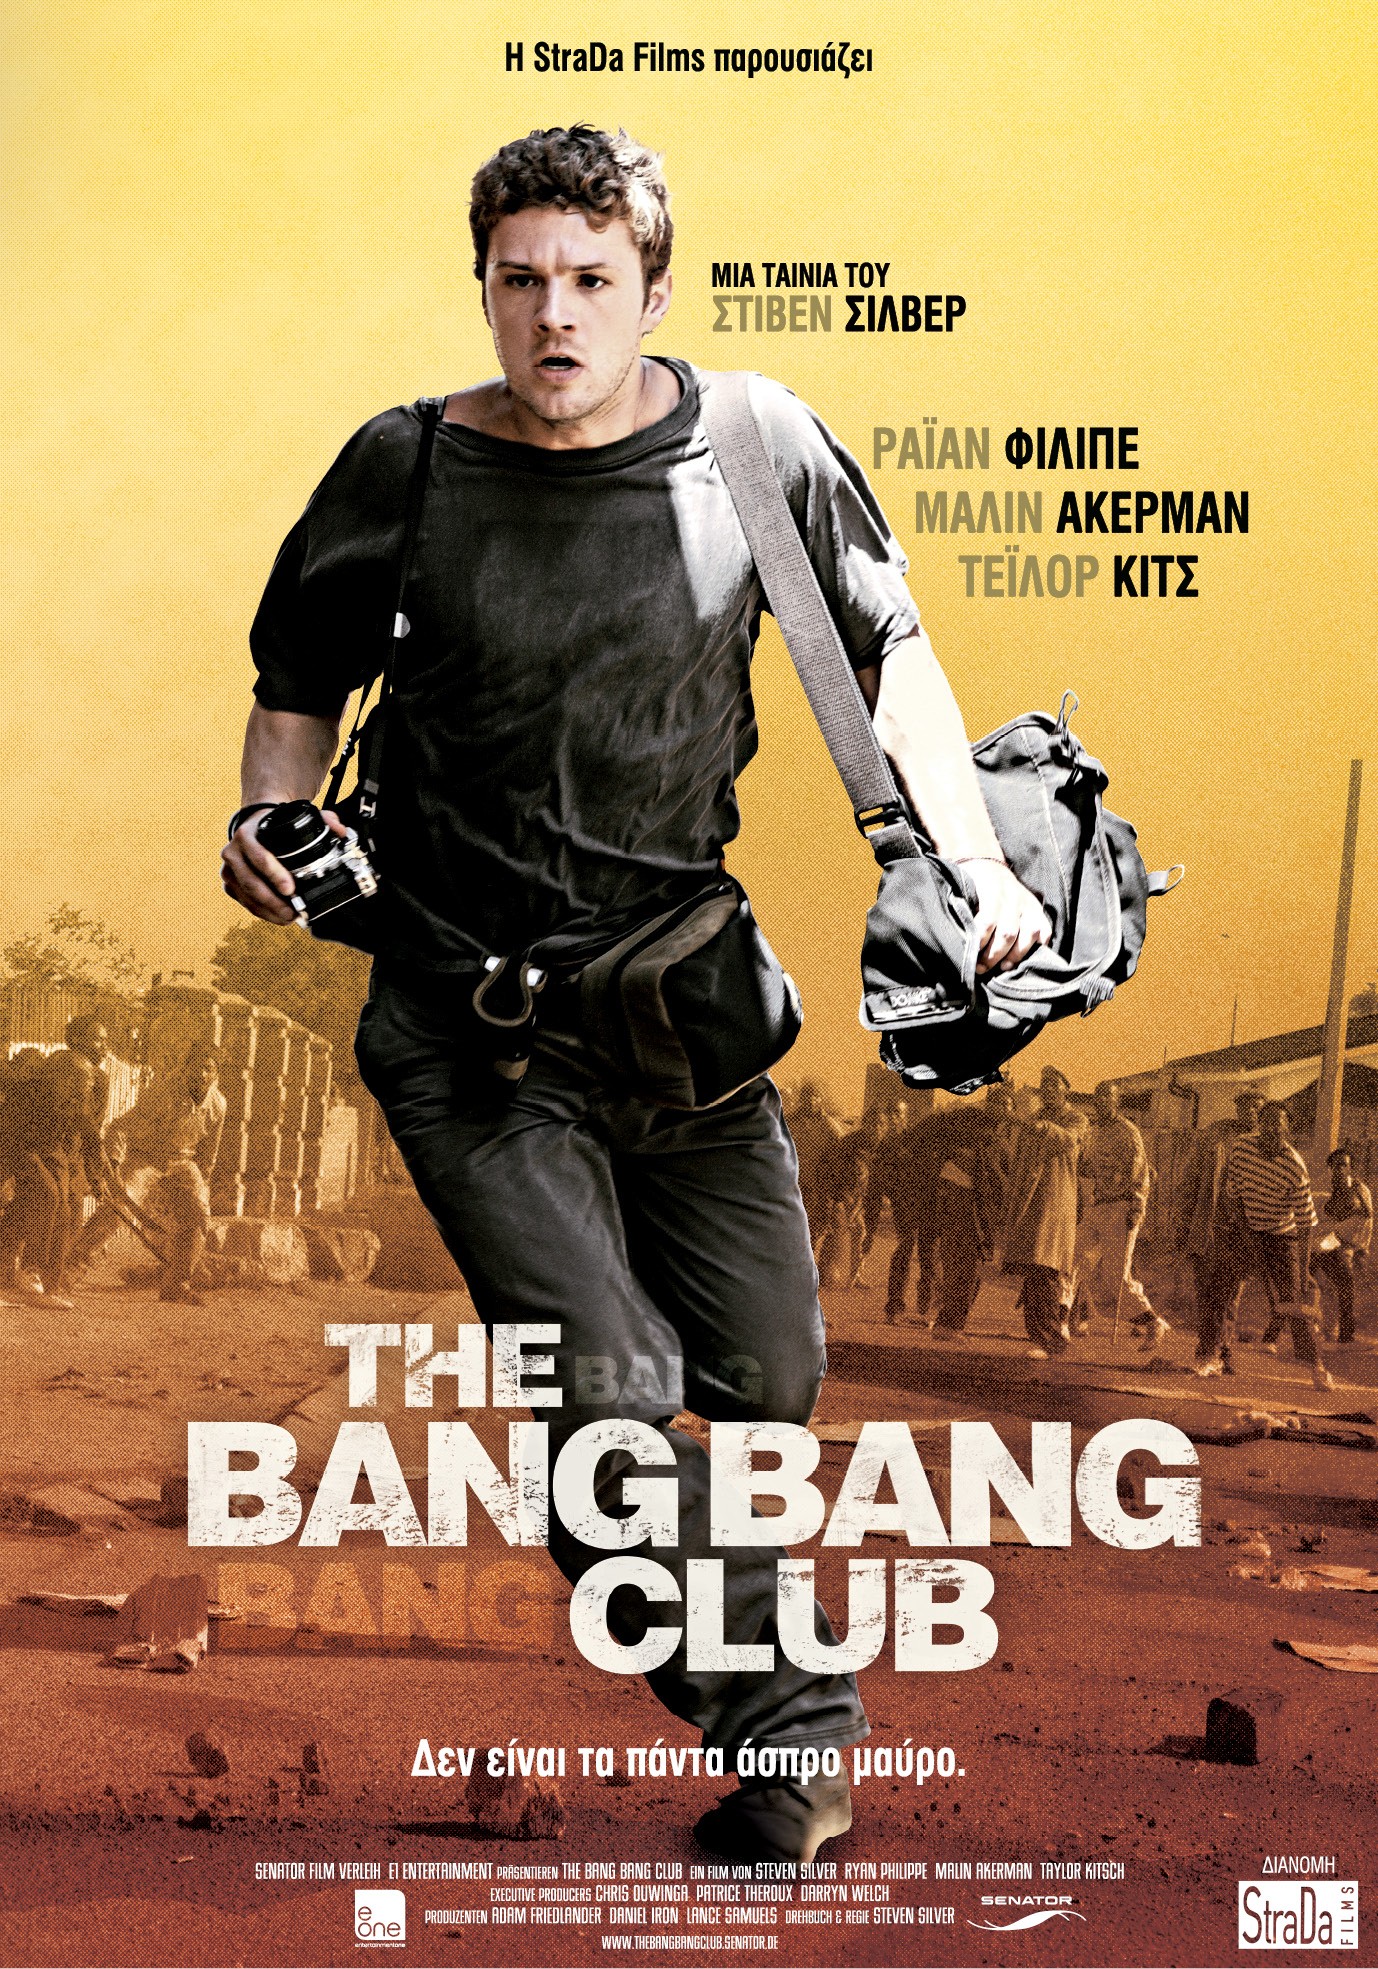 Bang bang movie